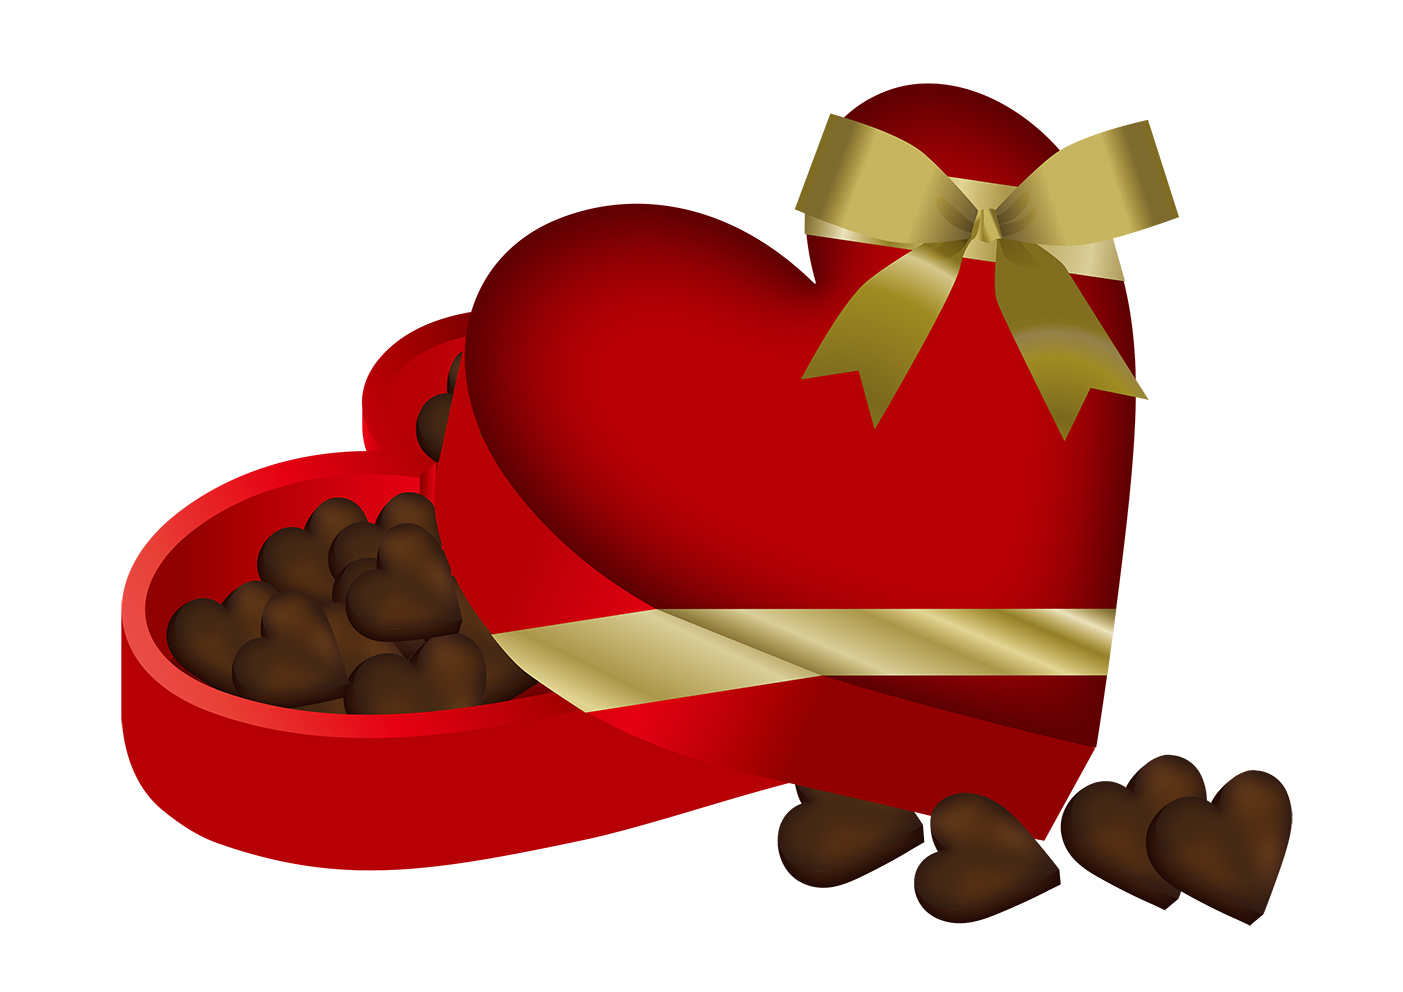 帝国ホテルで使用されている材料でバレンタインデーのチョコレートを手作りしませんか？【帝国ホテルのアレンジレシピvol.2】